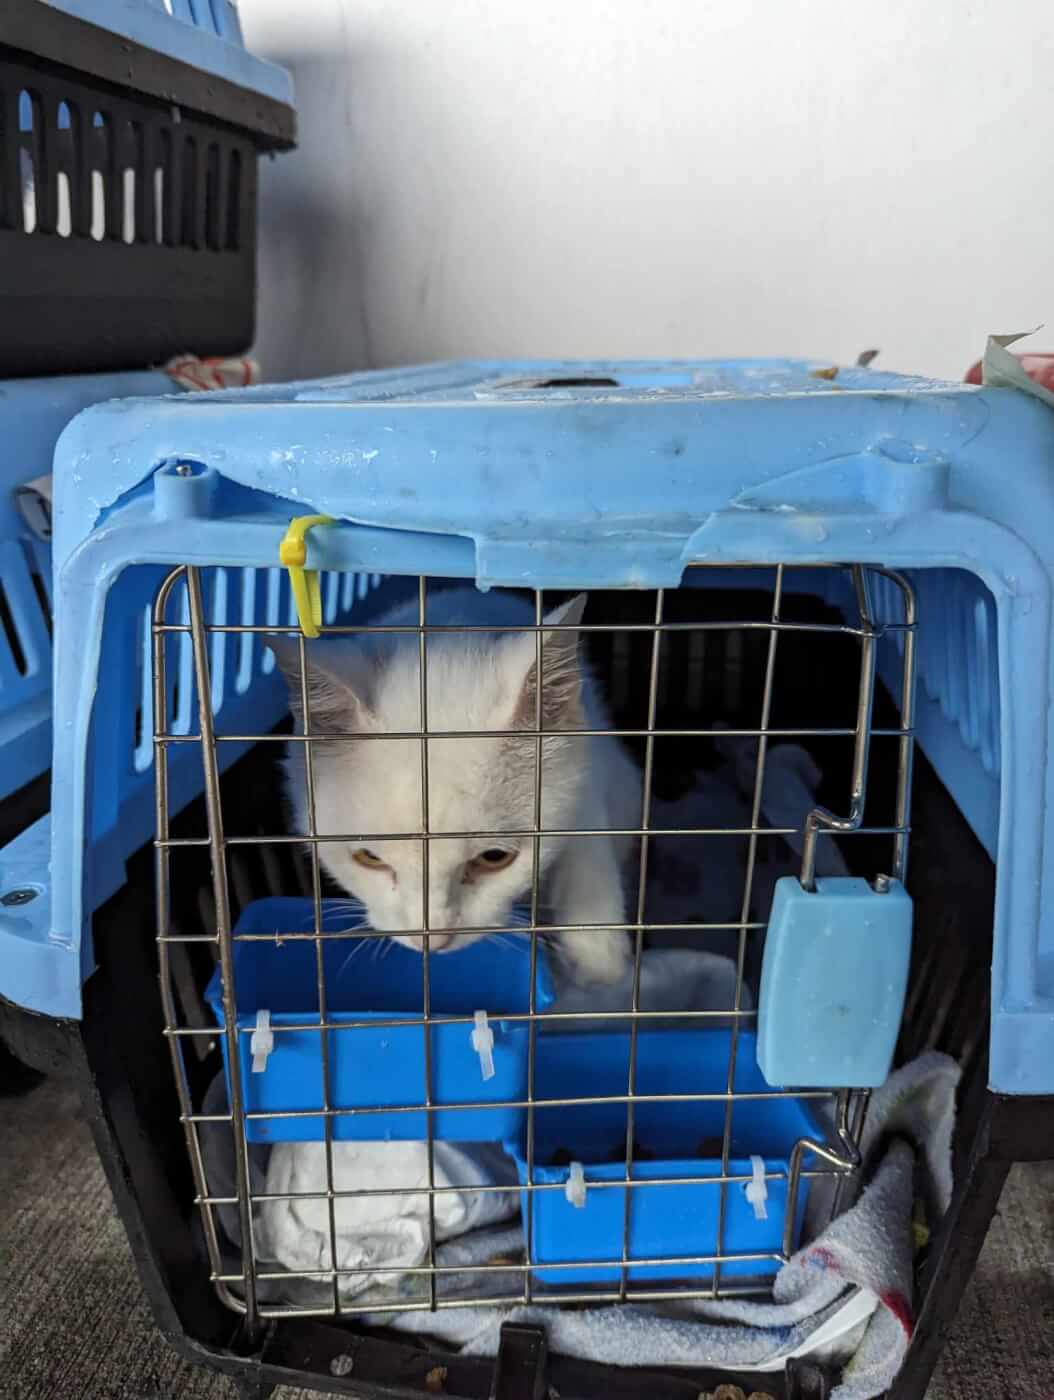 A white cat in a broken blue crate